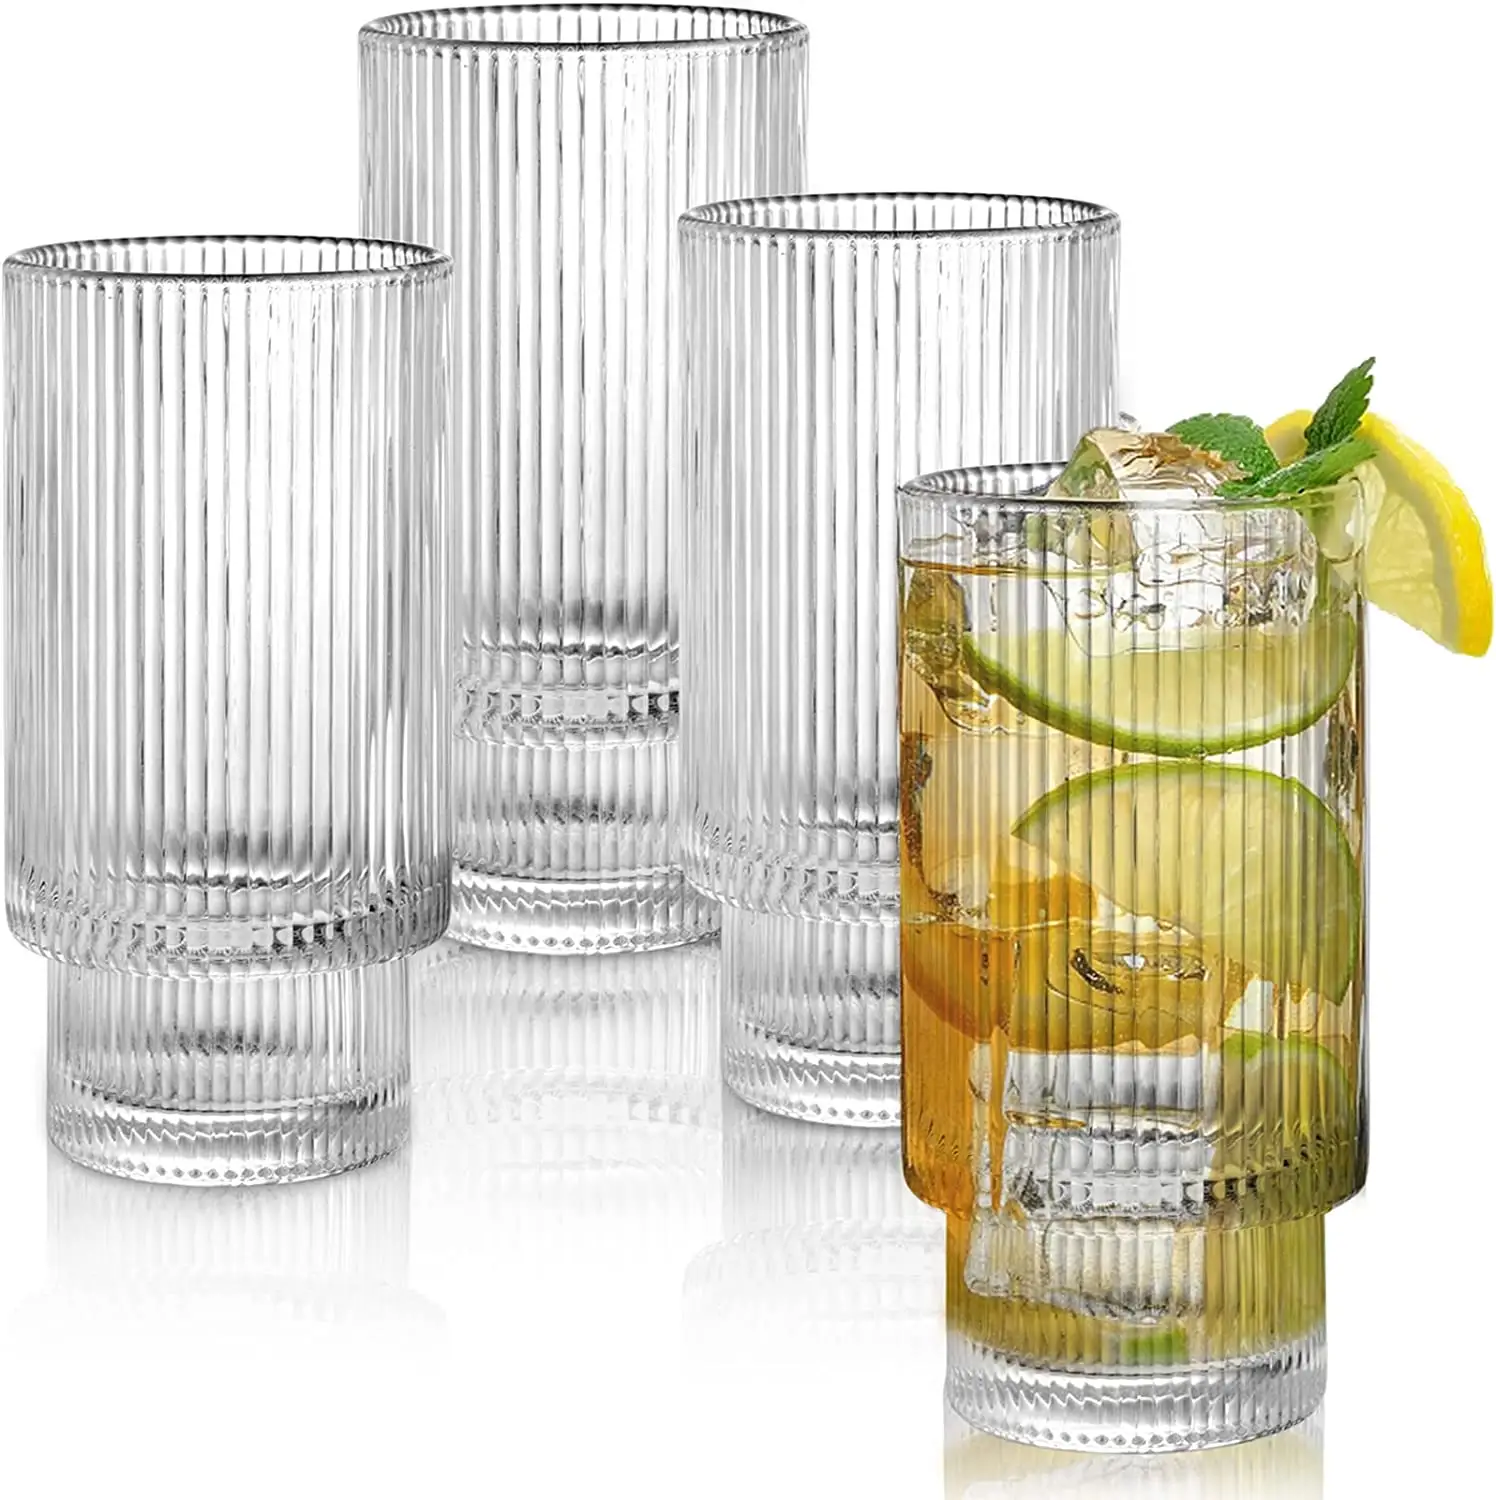 カクテル、ジュース、リブ付きガラス製品、飲料用の重いベースのクリスタルシックウォーターグラス用の10 OZクリアトールドリンクグラス